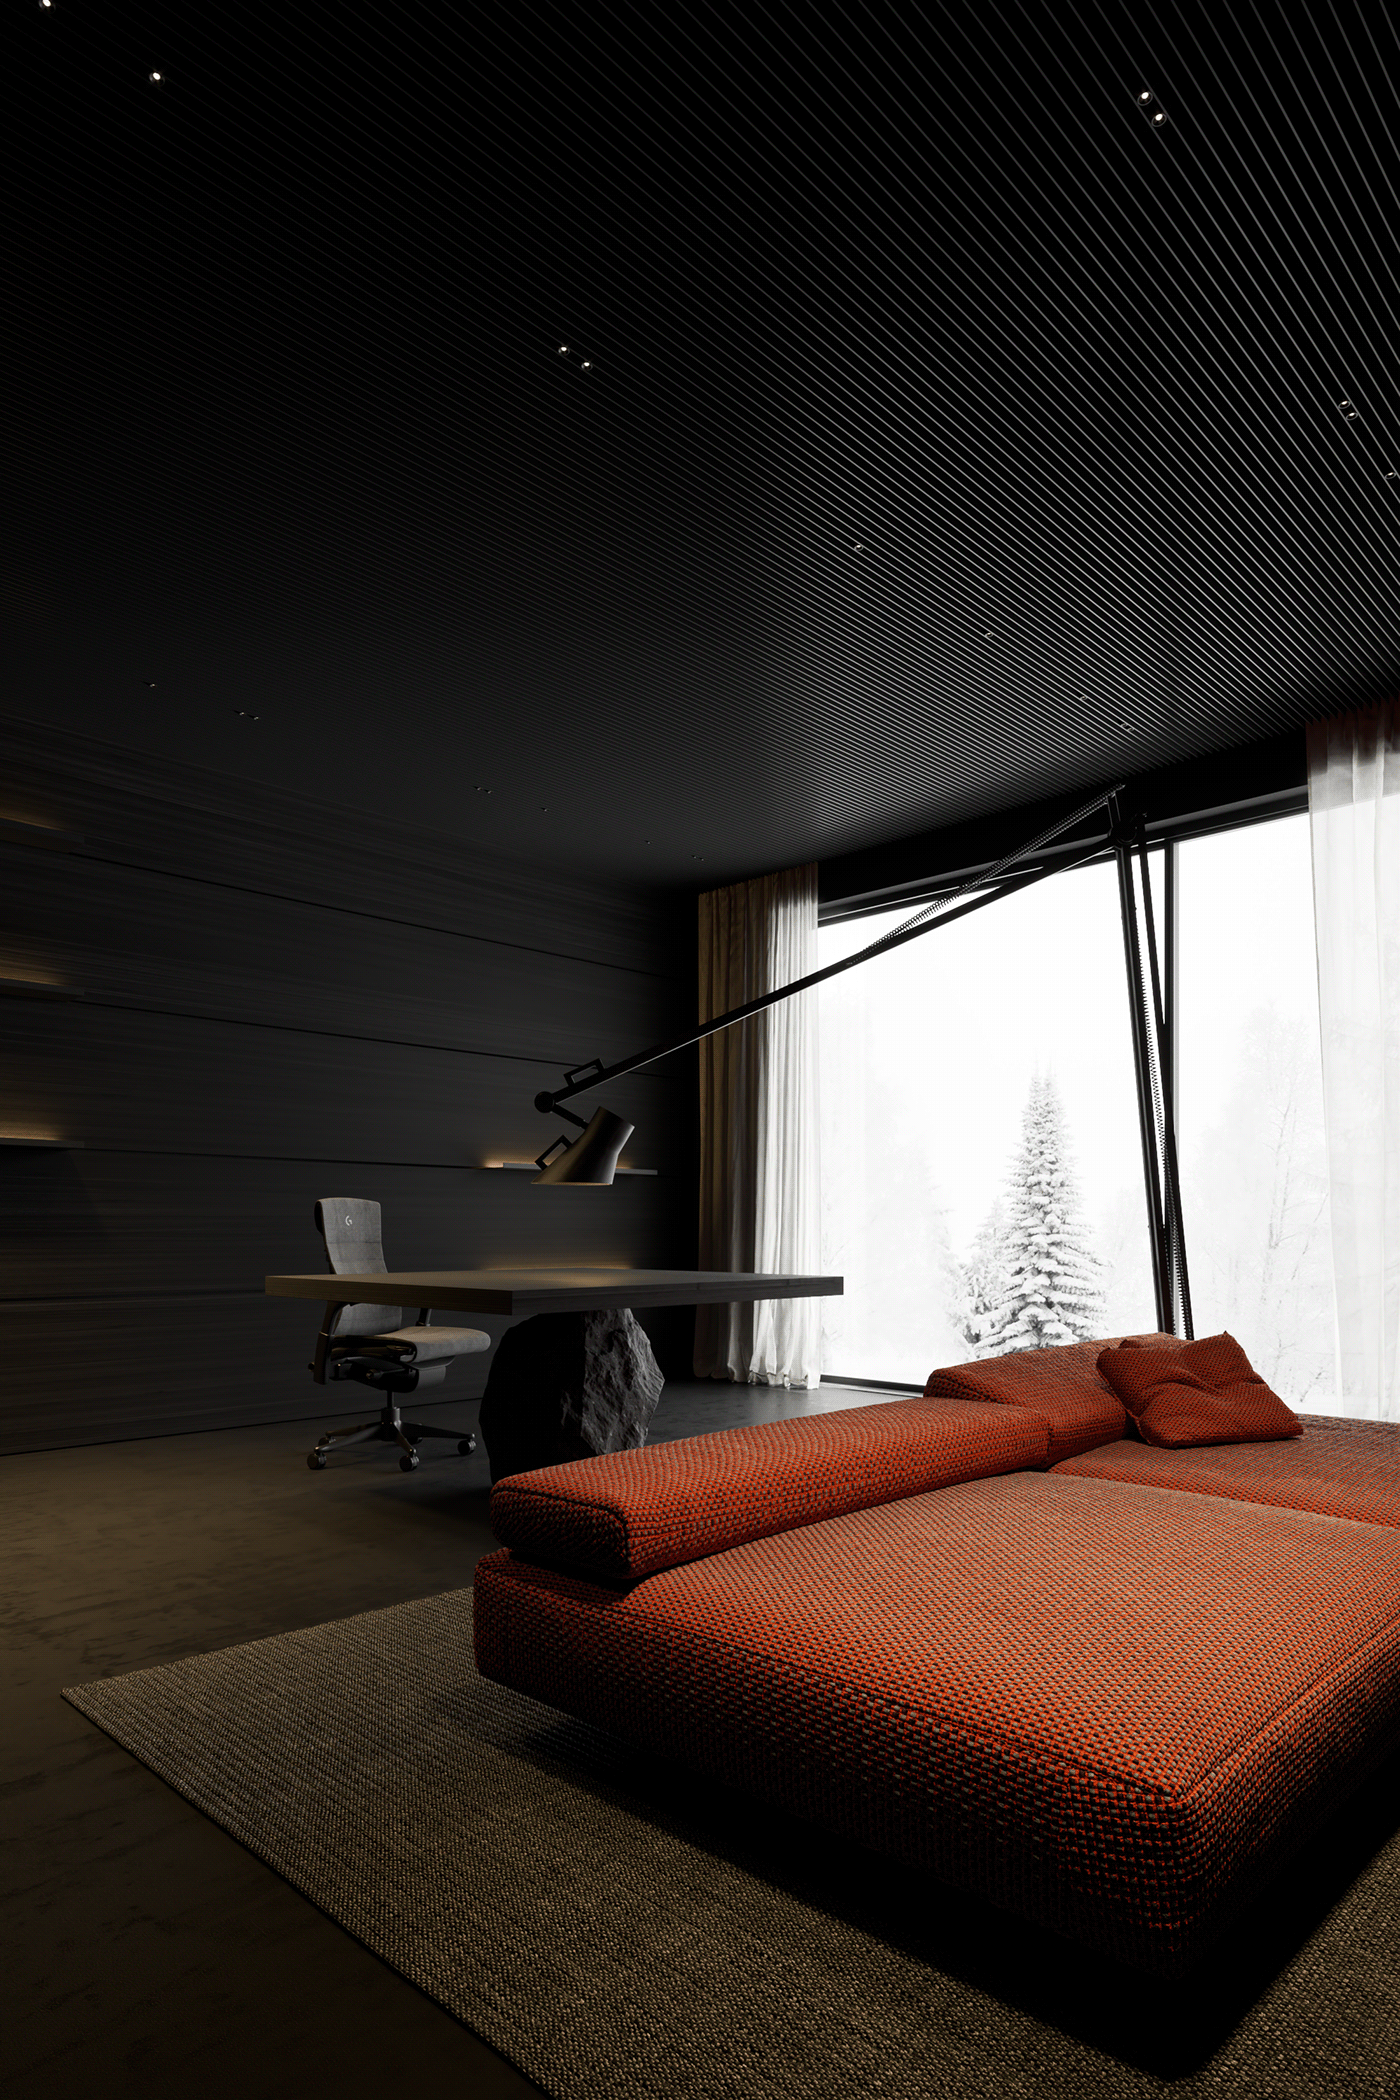 3dsmax architecture blackinterior Conceptdesign CoronaRender  inspiration interior design  Render visualization дизайн интерьера